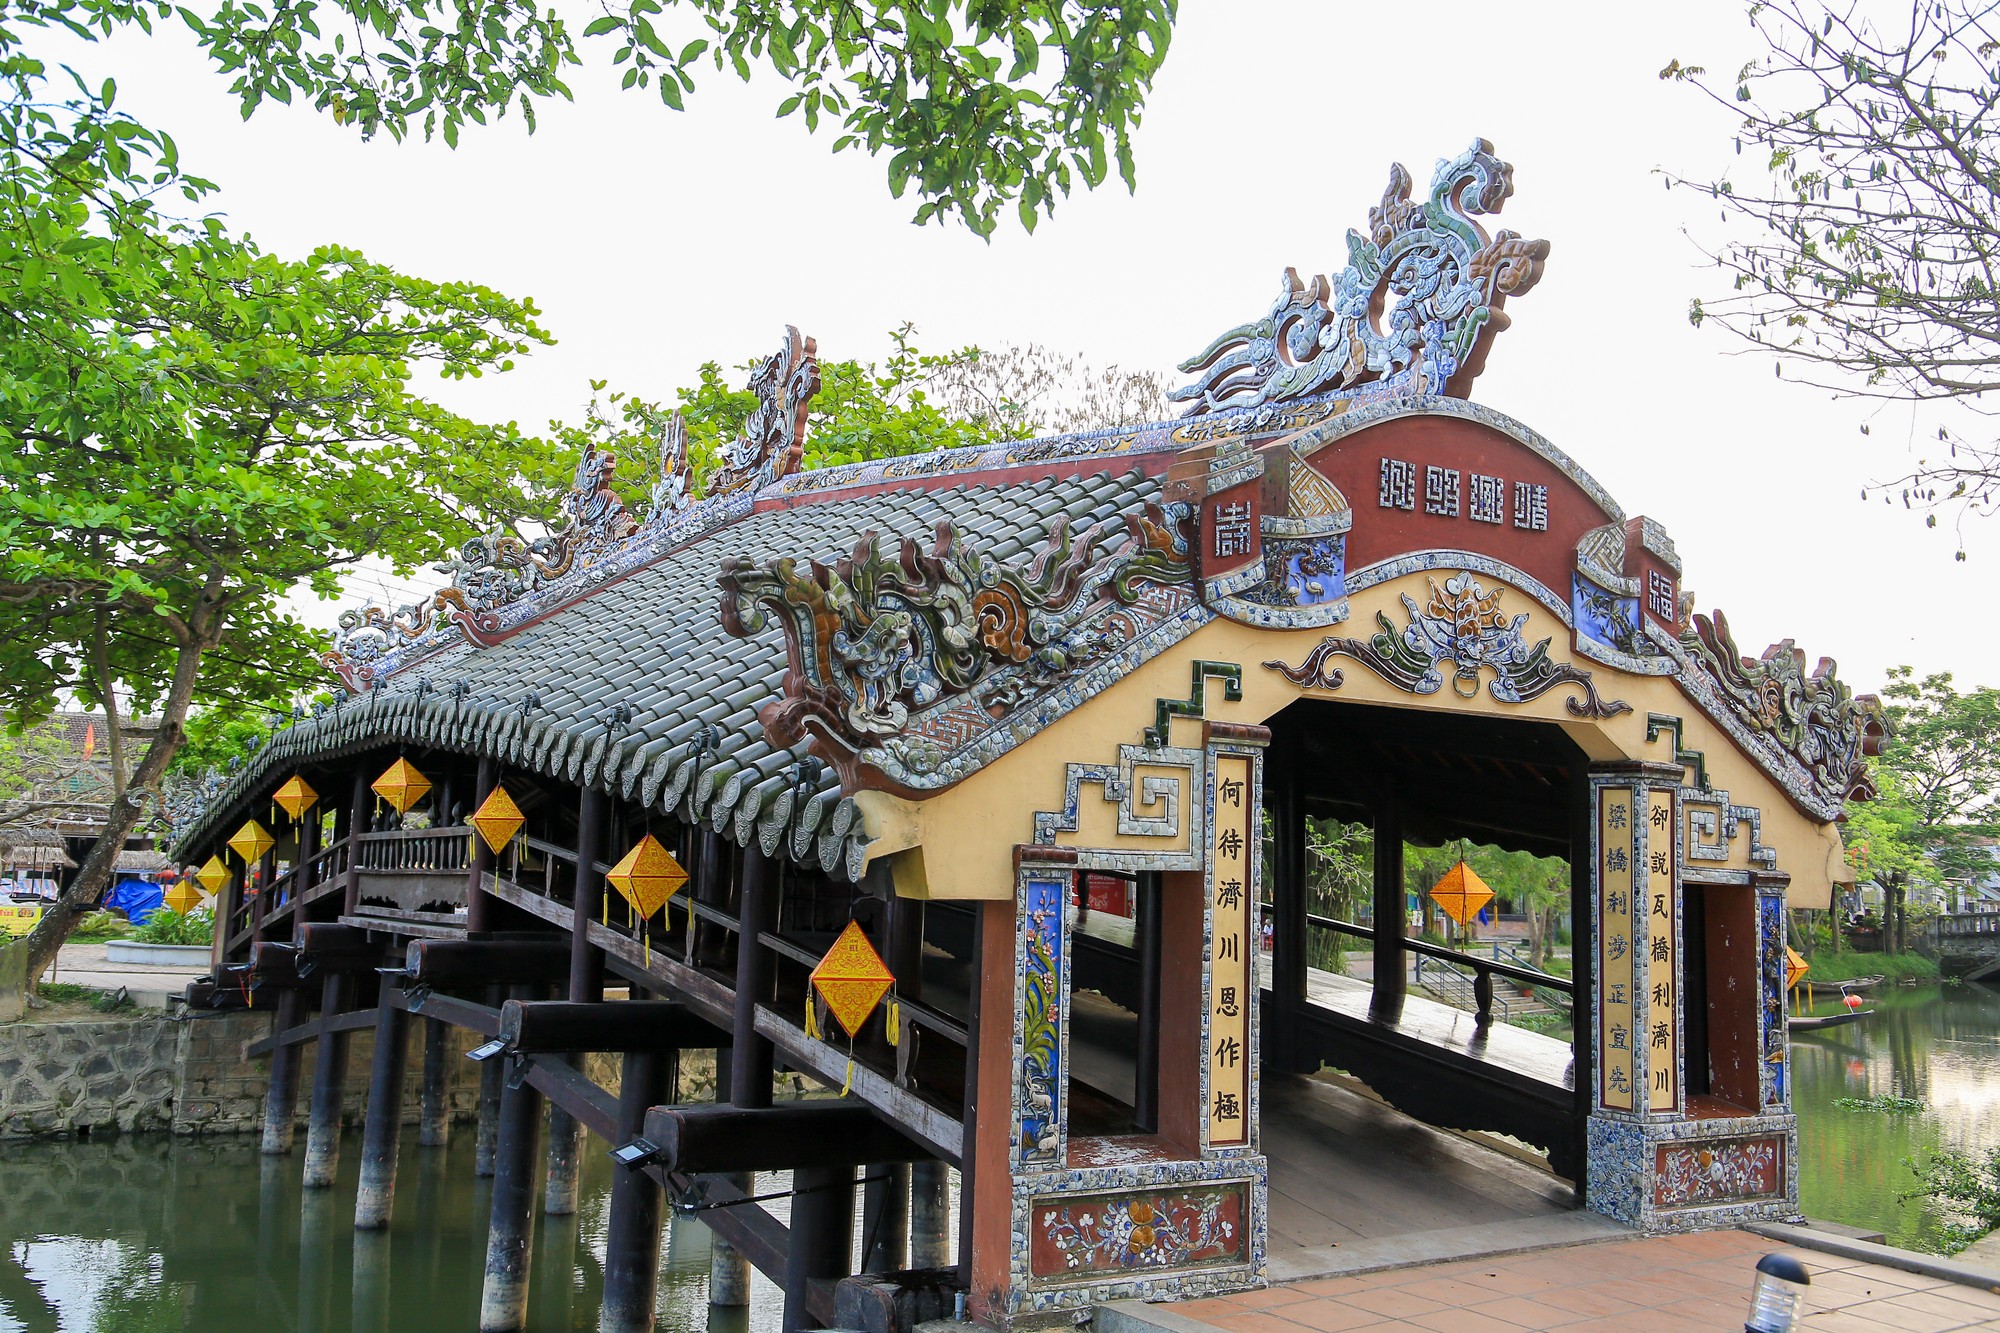 Cầu gỗ này được xếp vào loại hiếm và có giá trị nghệ thuật cao nhất trong các loại cầu cổ ở Việt Nam. Cầu được Bộ Văn hoá cấp bằng công nhận là Di tích văn hóa cấp quốc gia năm 1990.